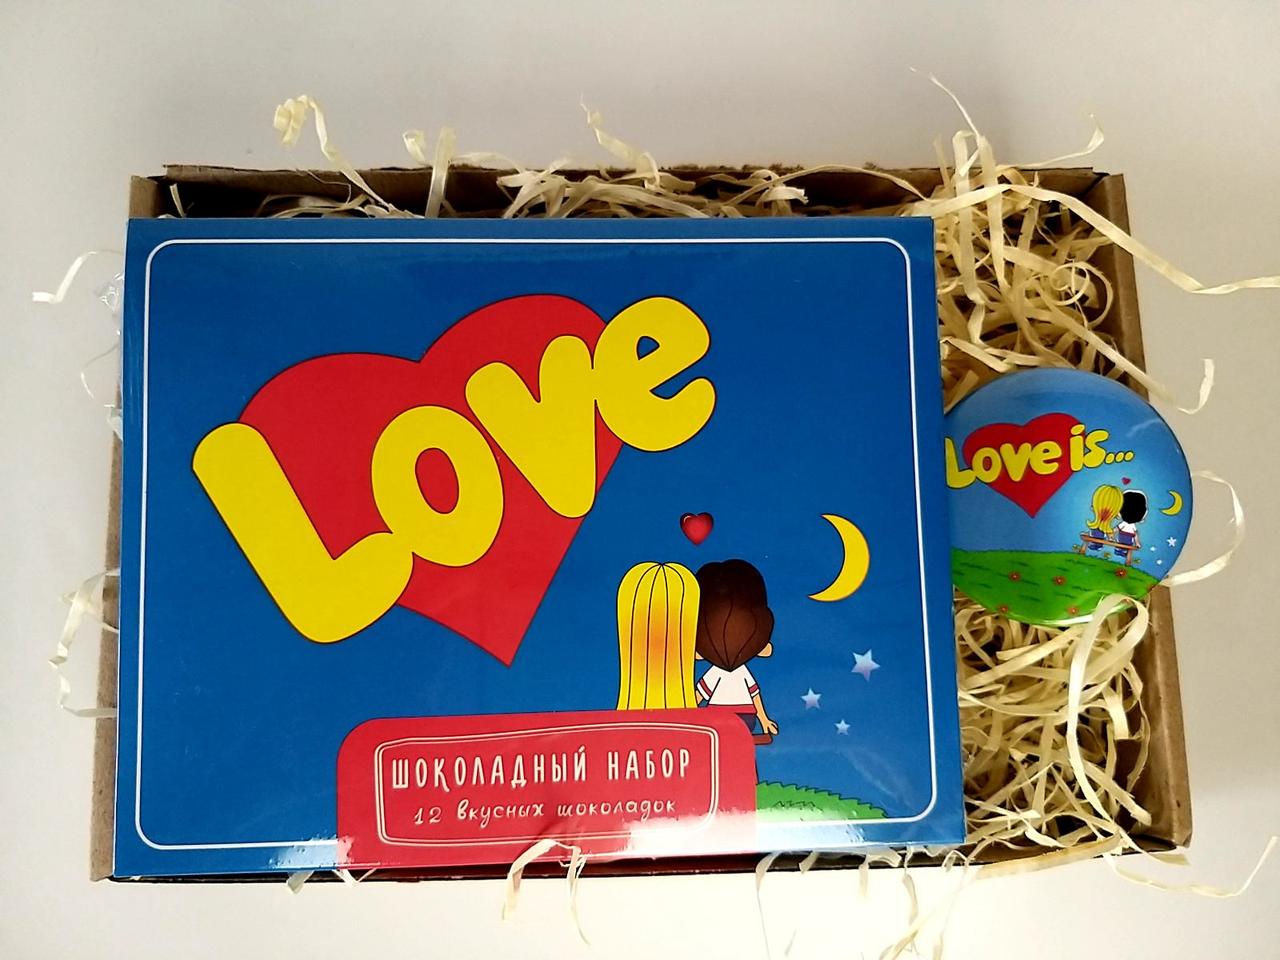 Подарунок у стилі "Love is": шоколадний набір з міні-шоколадок Лав із і круглий значок